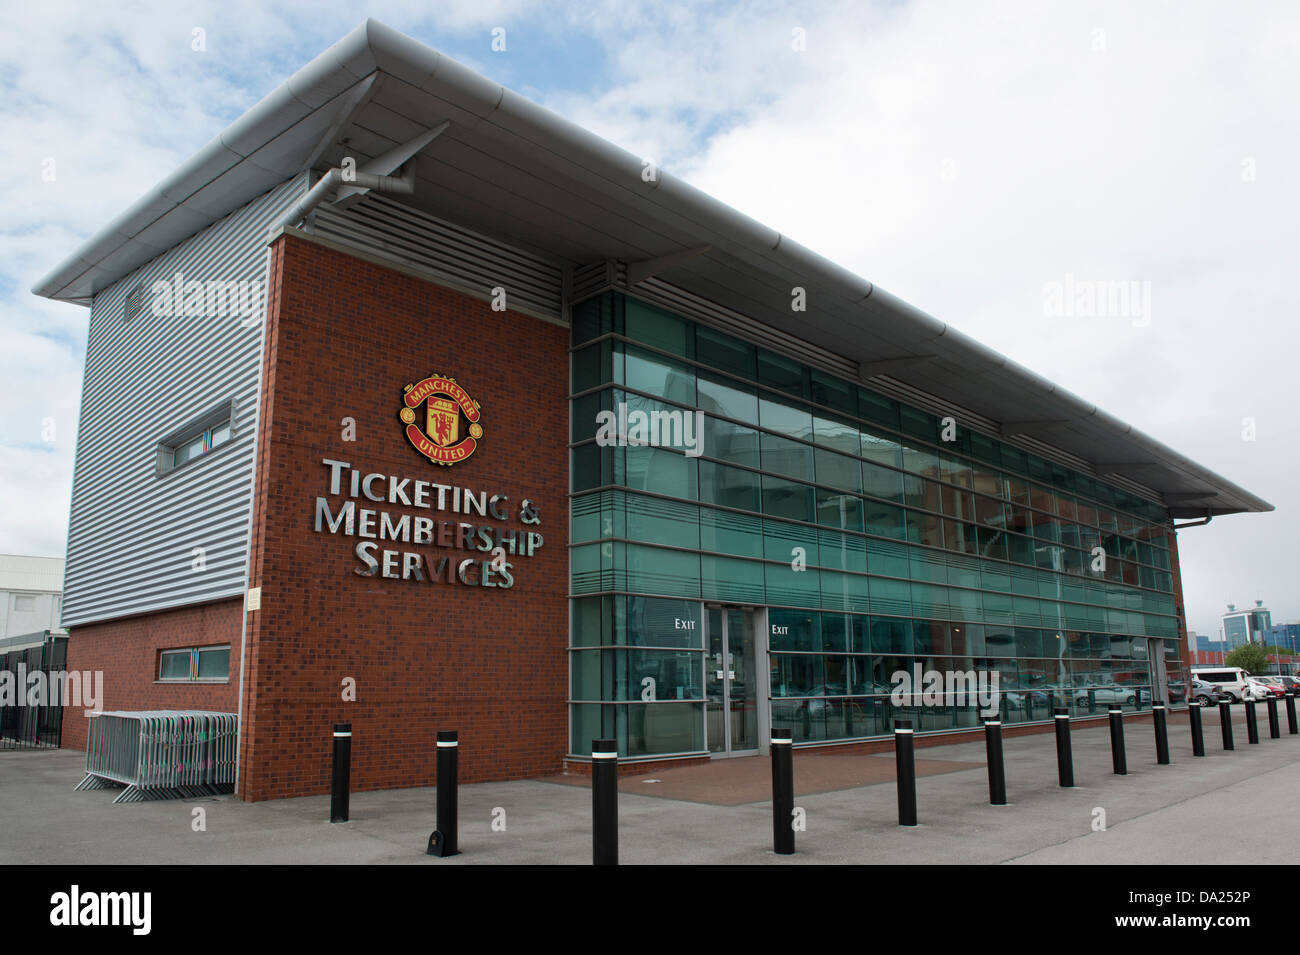 La billetterie et les services aux membres de l'immeuble de bureaux Manchester United Football Club (usage éditorial uniquement). Banque D'Images